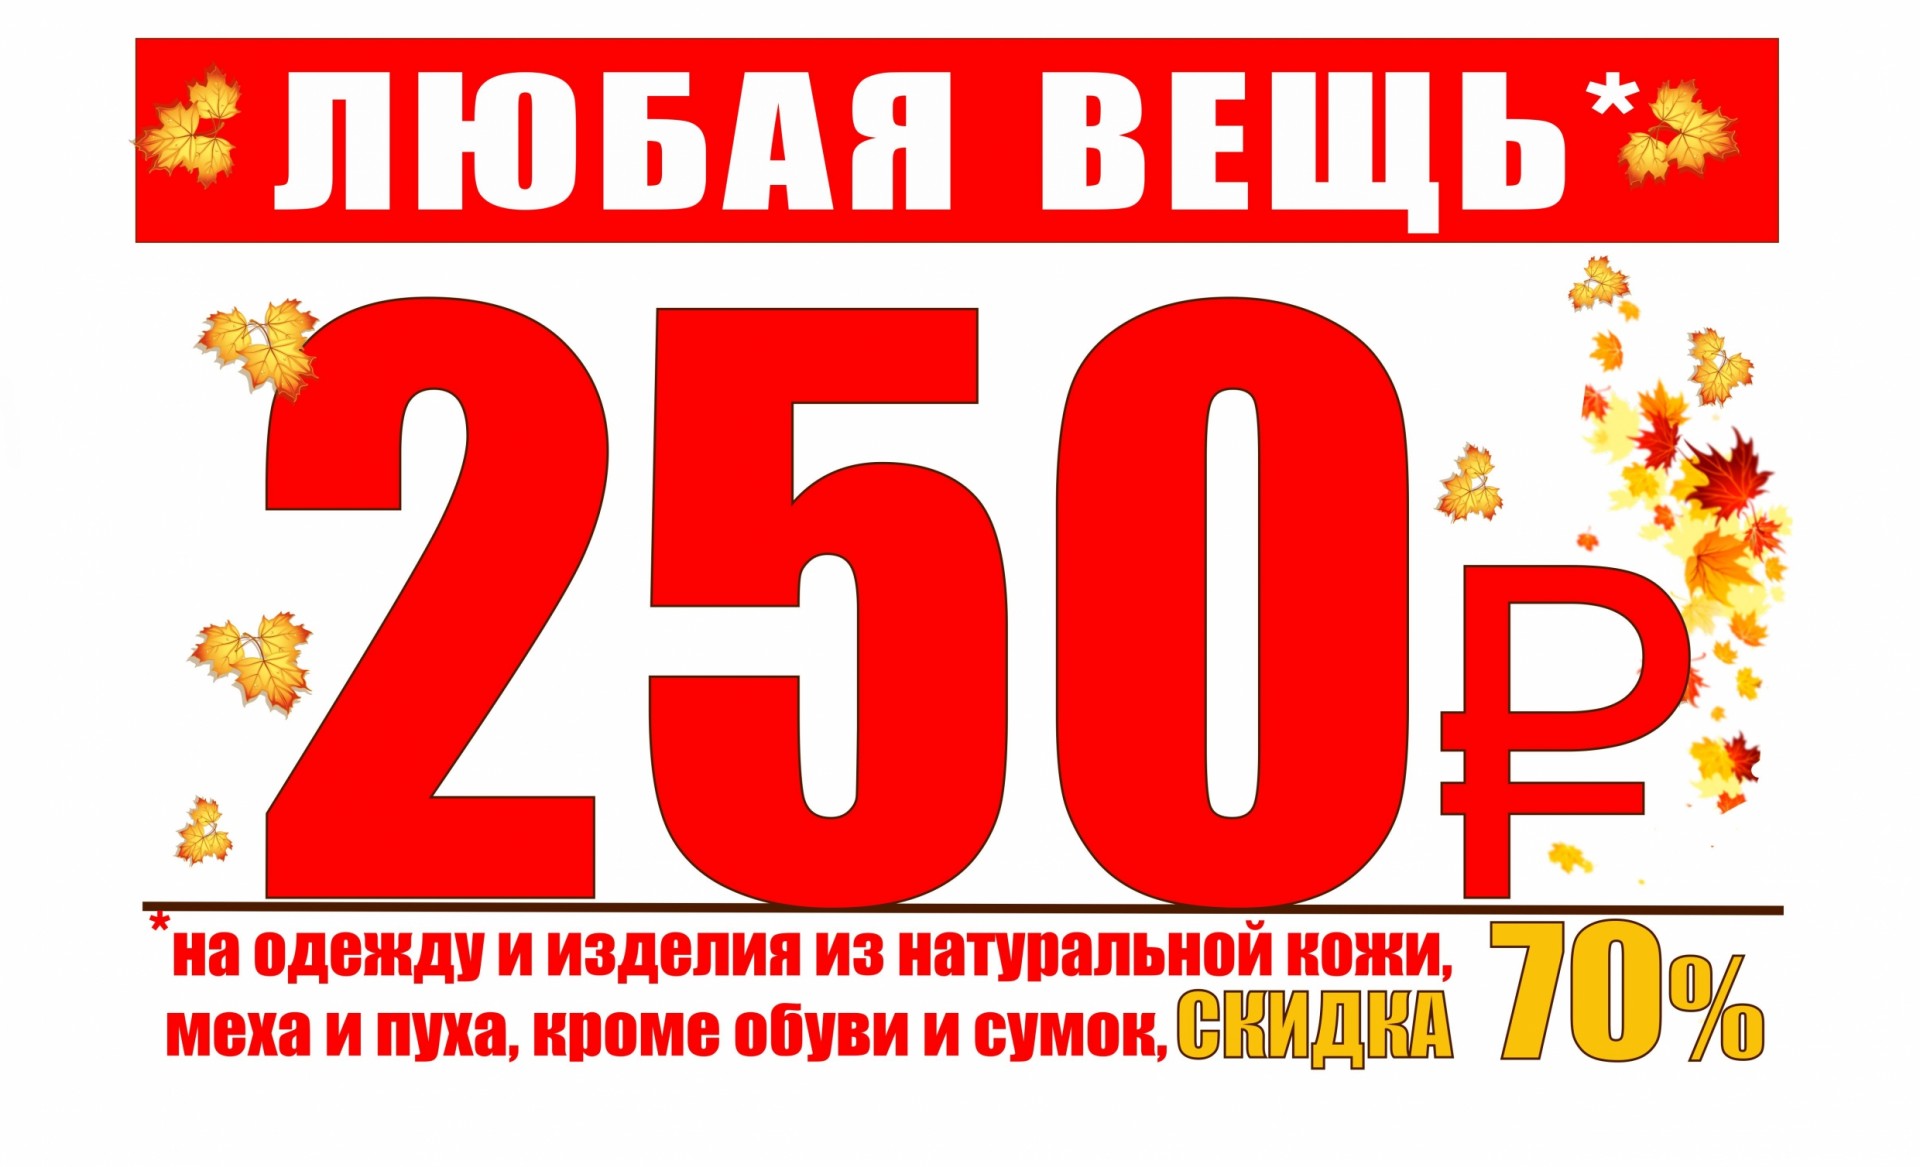 250 300 рублей